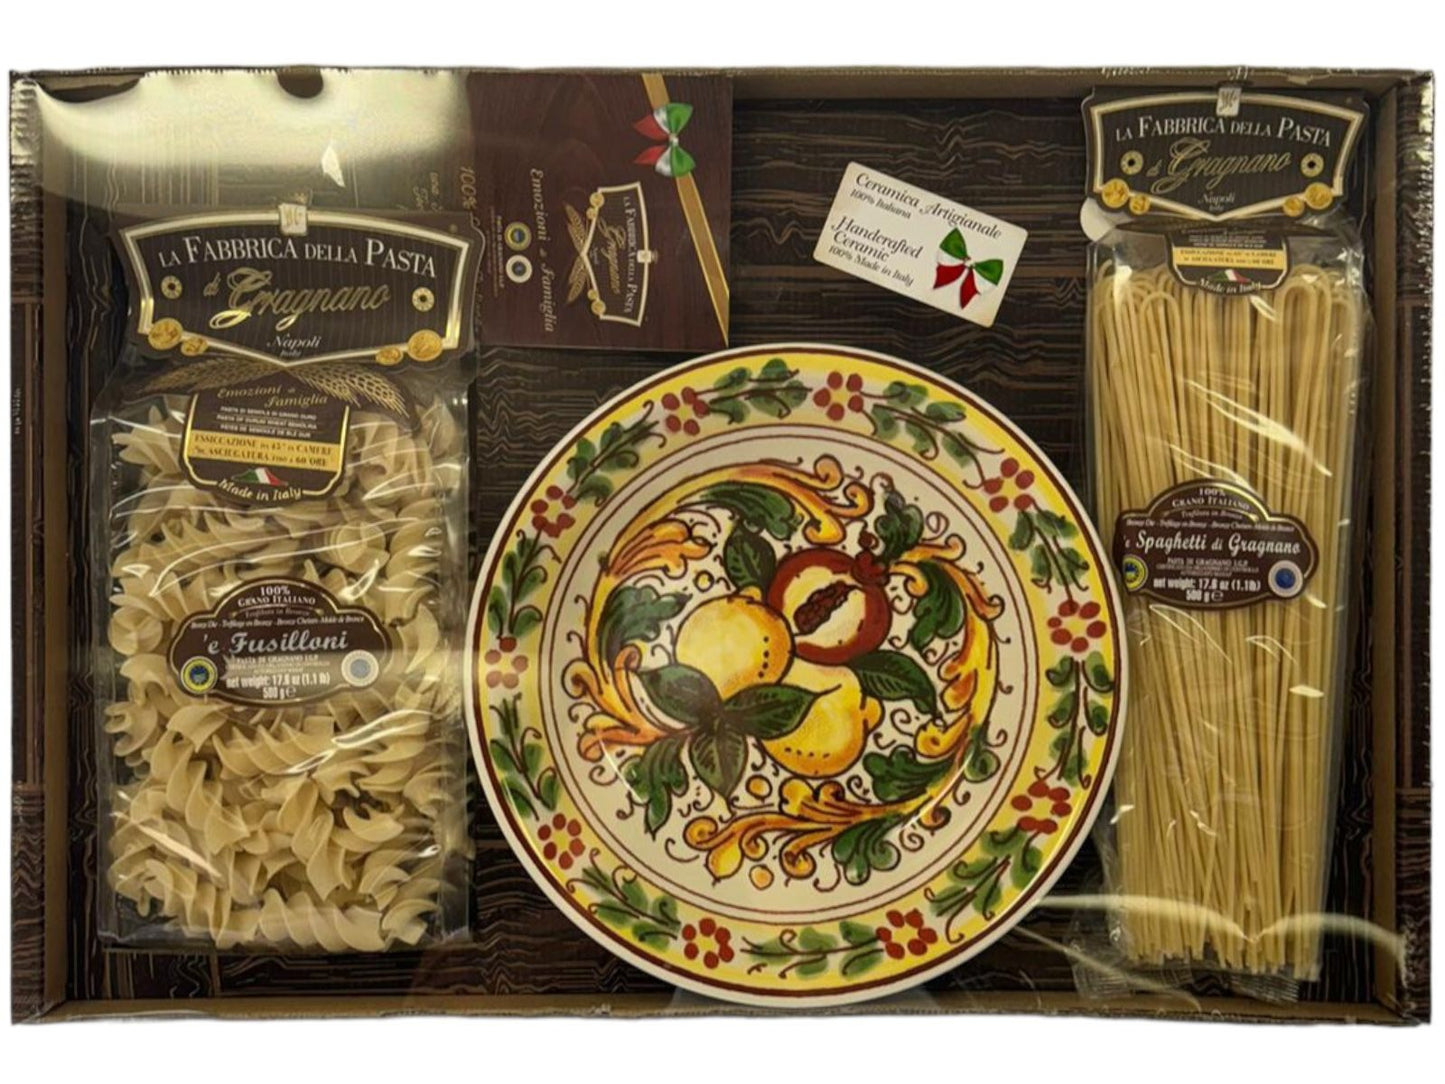 La Fabrica Della Pasta Gragnano Pasta Gift Box With Homemade Ceramic Bowl